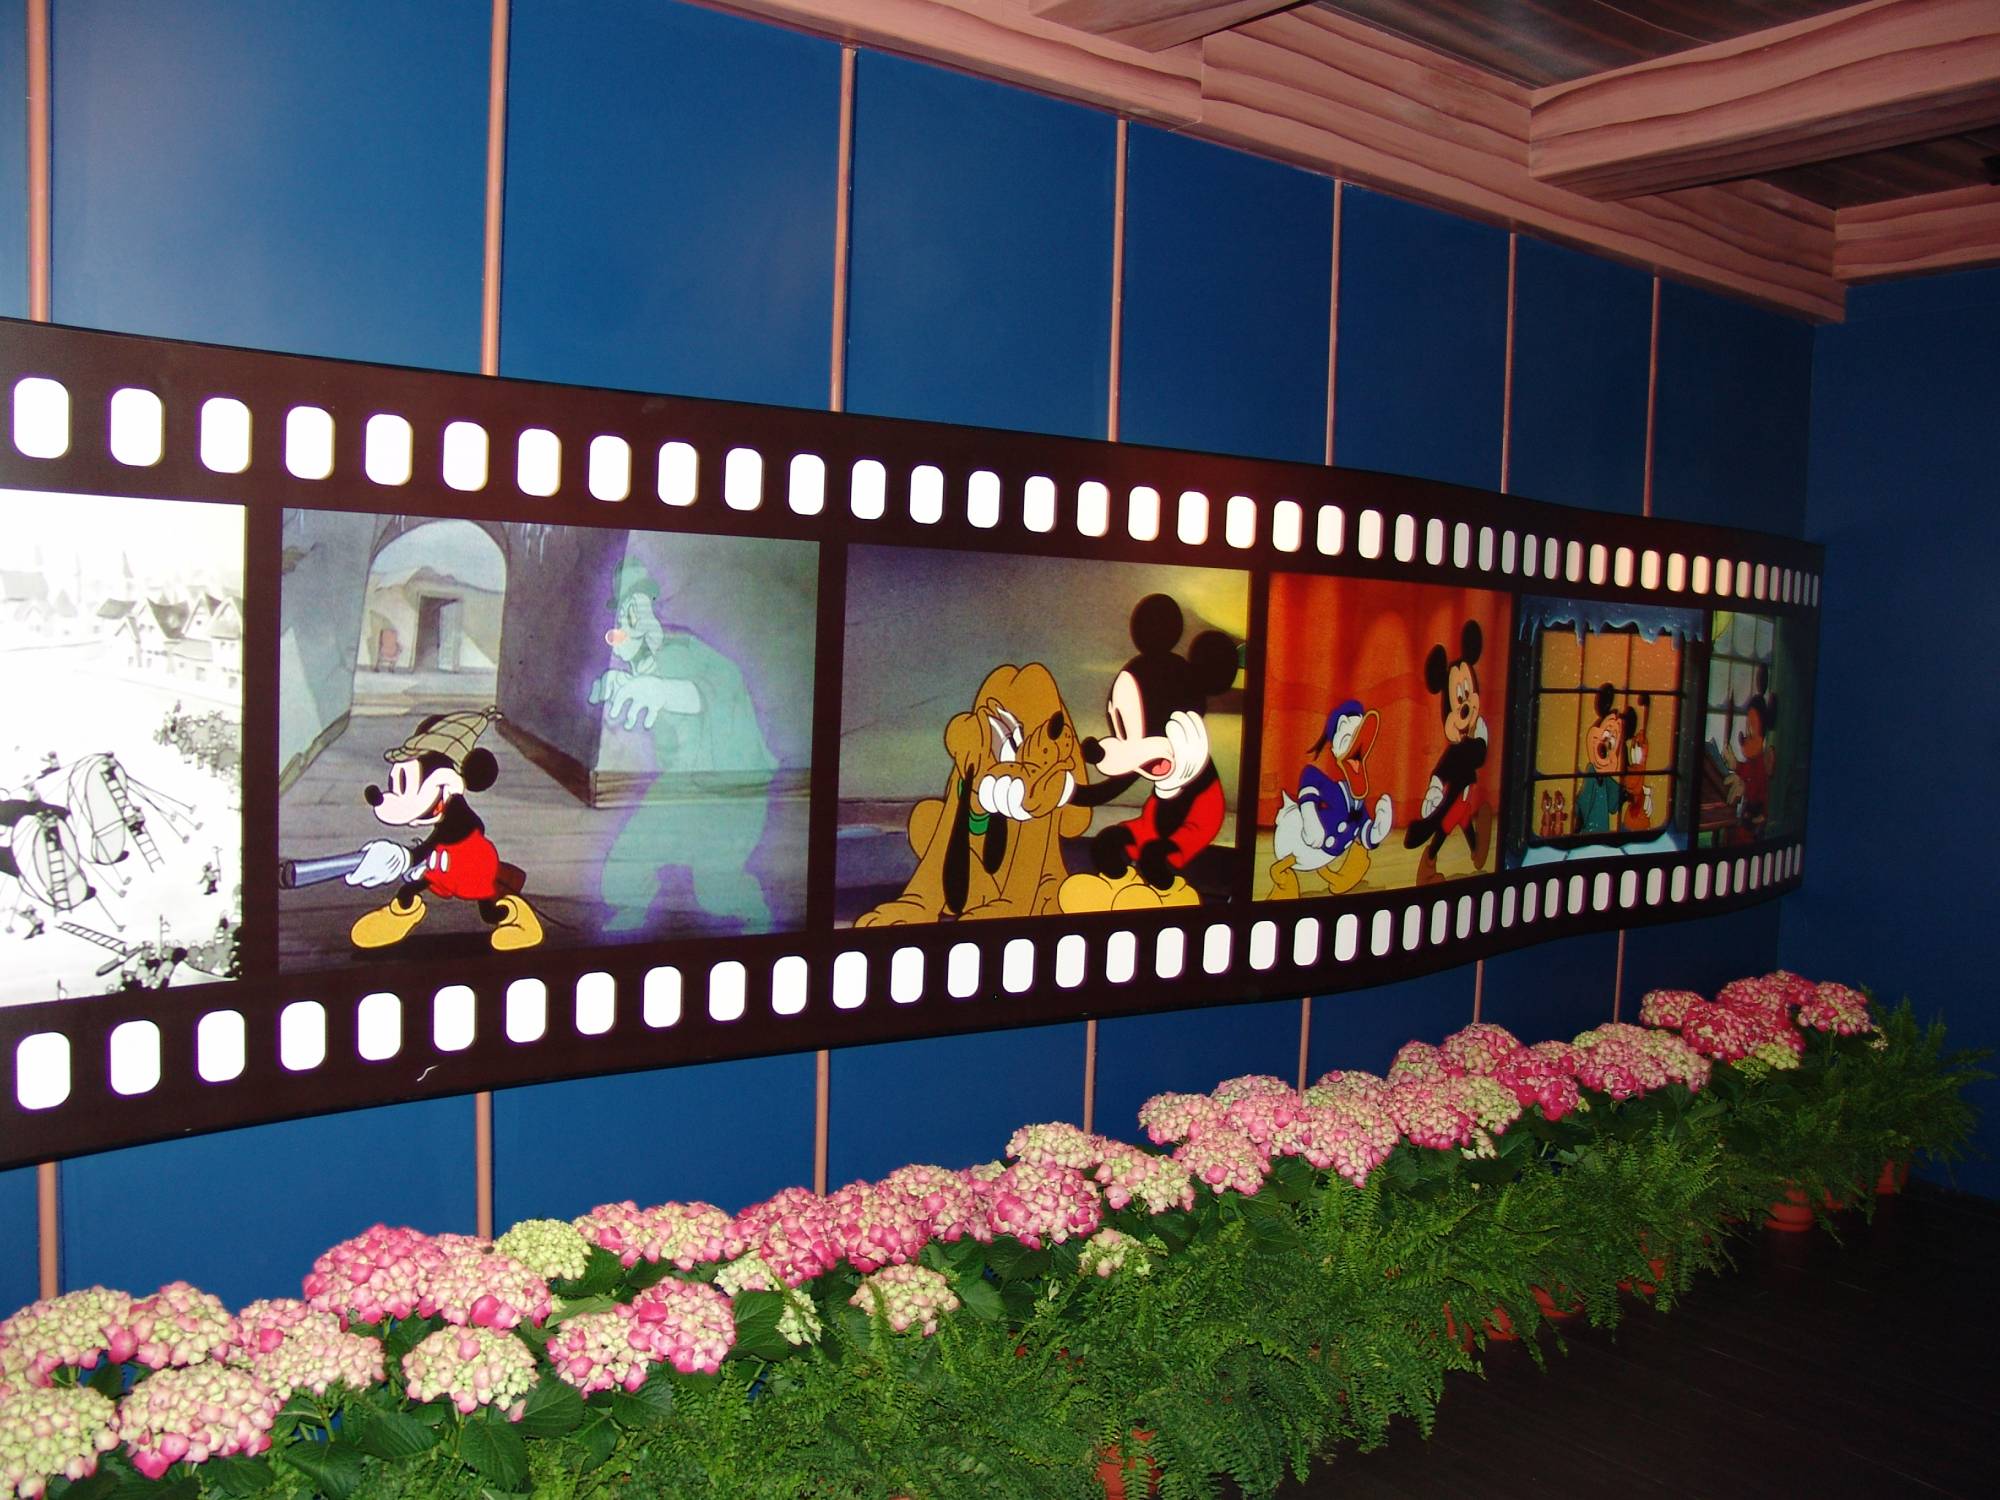 Hong Kong Disneyland - Mickey's House